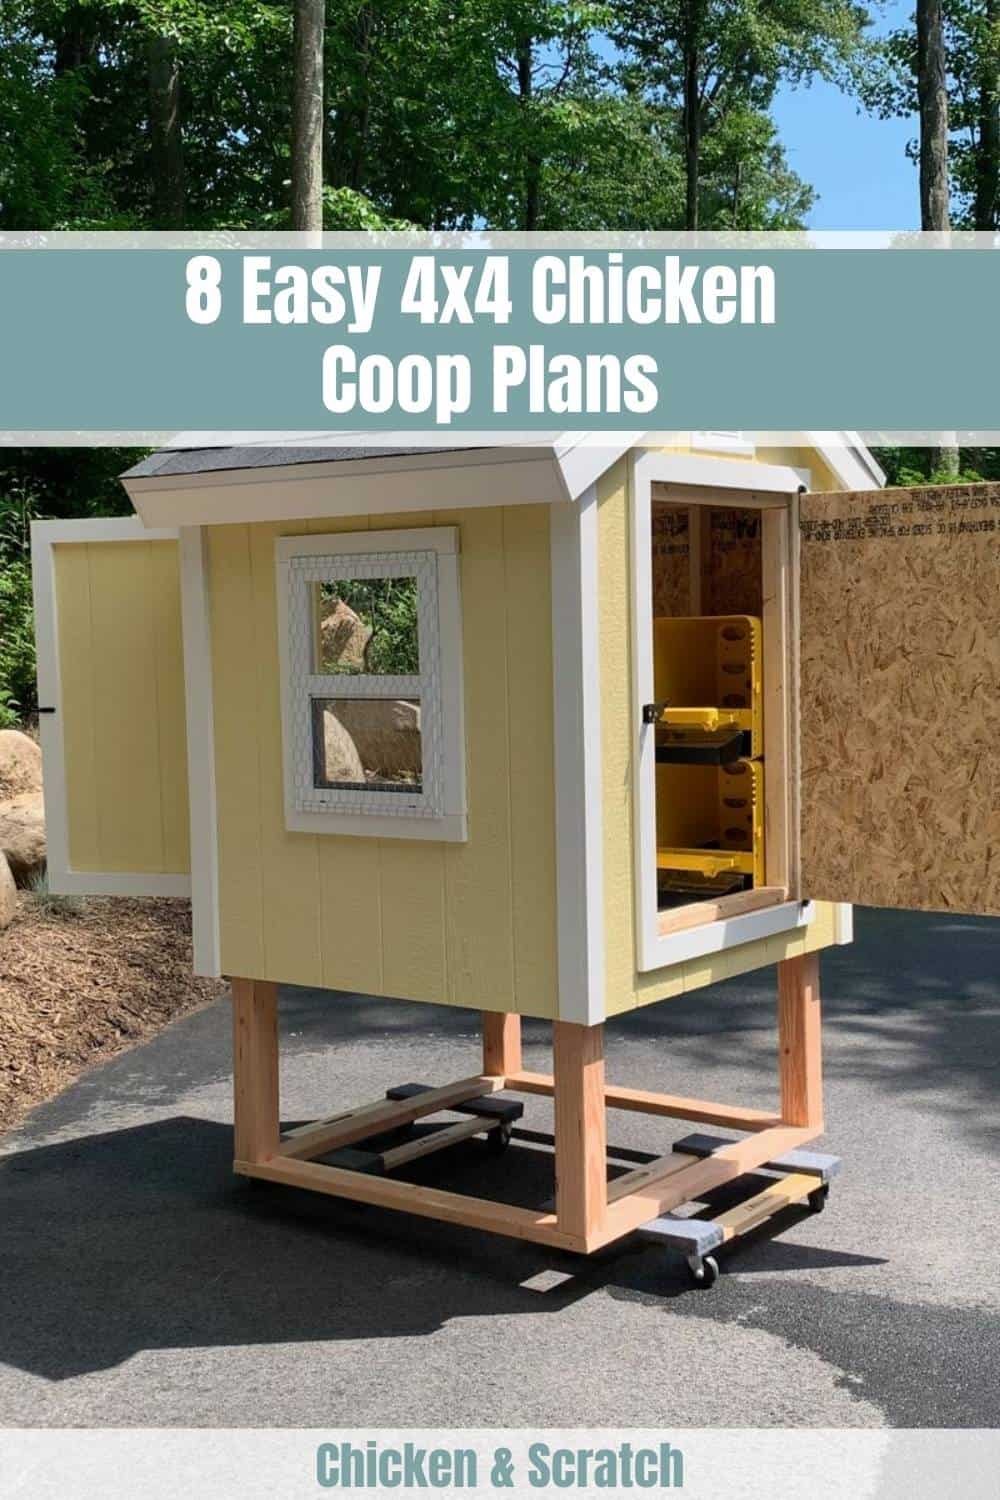 4x4 chicken coop